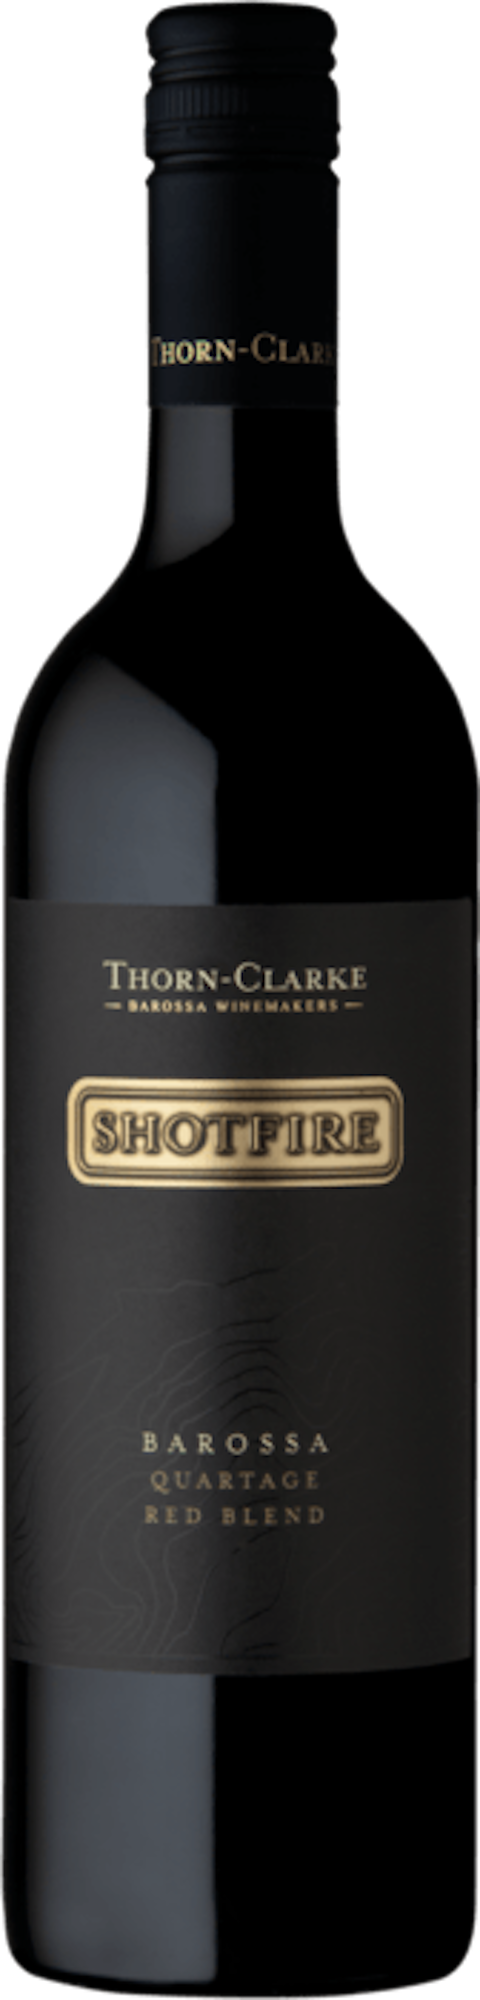 Thorn Clarke Shotfire 